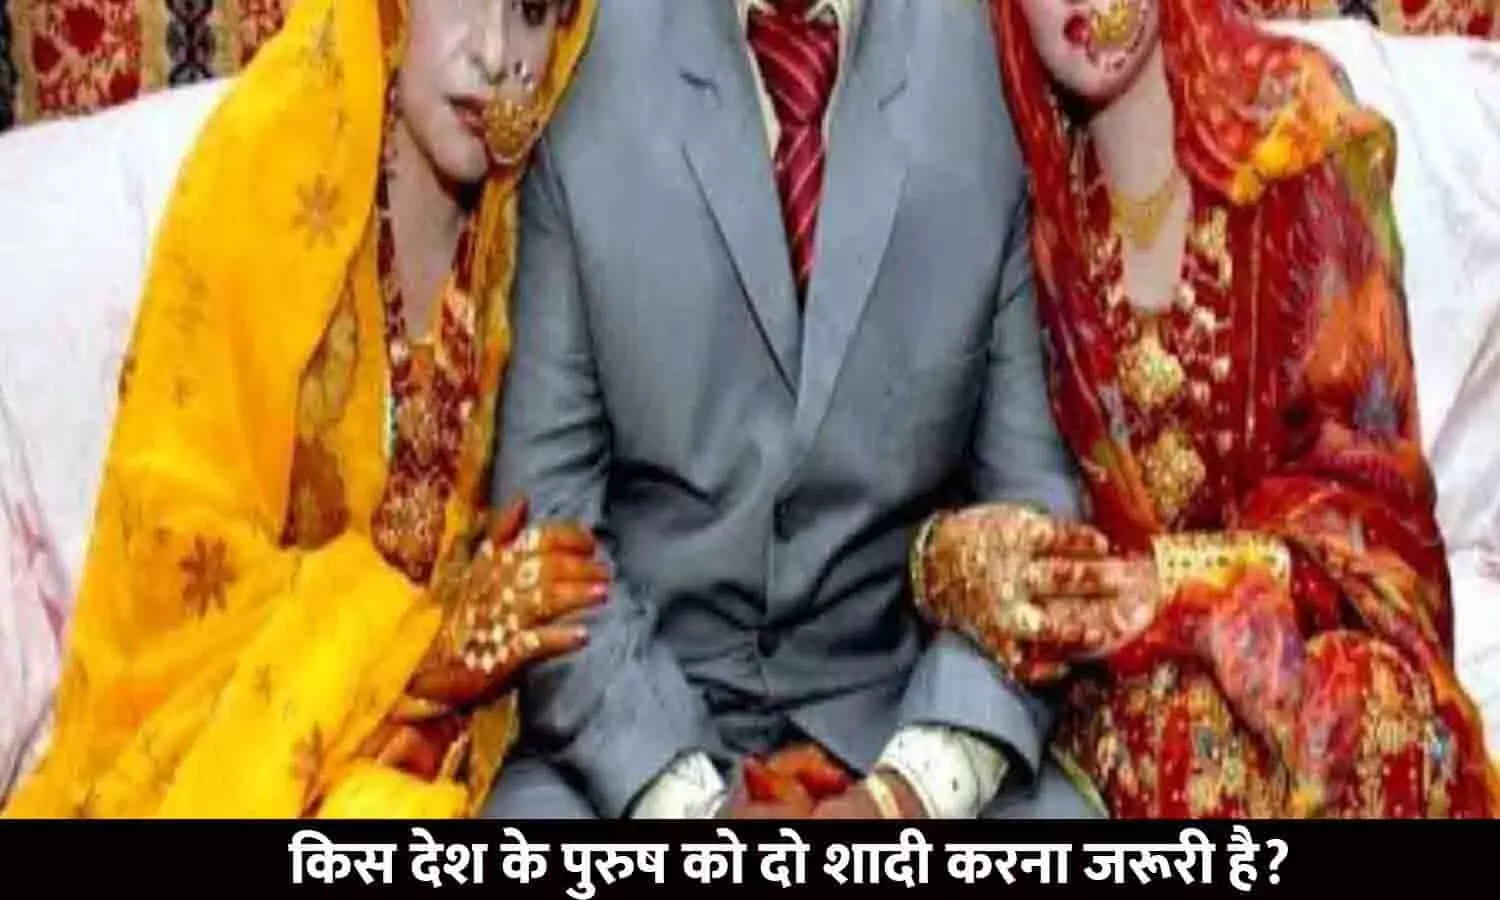 Kis Desh Ke Purush Ko Do Shadi Karna Jaruri Hai | किस देश के पुरुष को दो शादी करना जरूरी है? जानिए